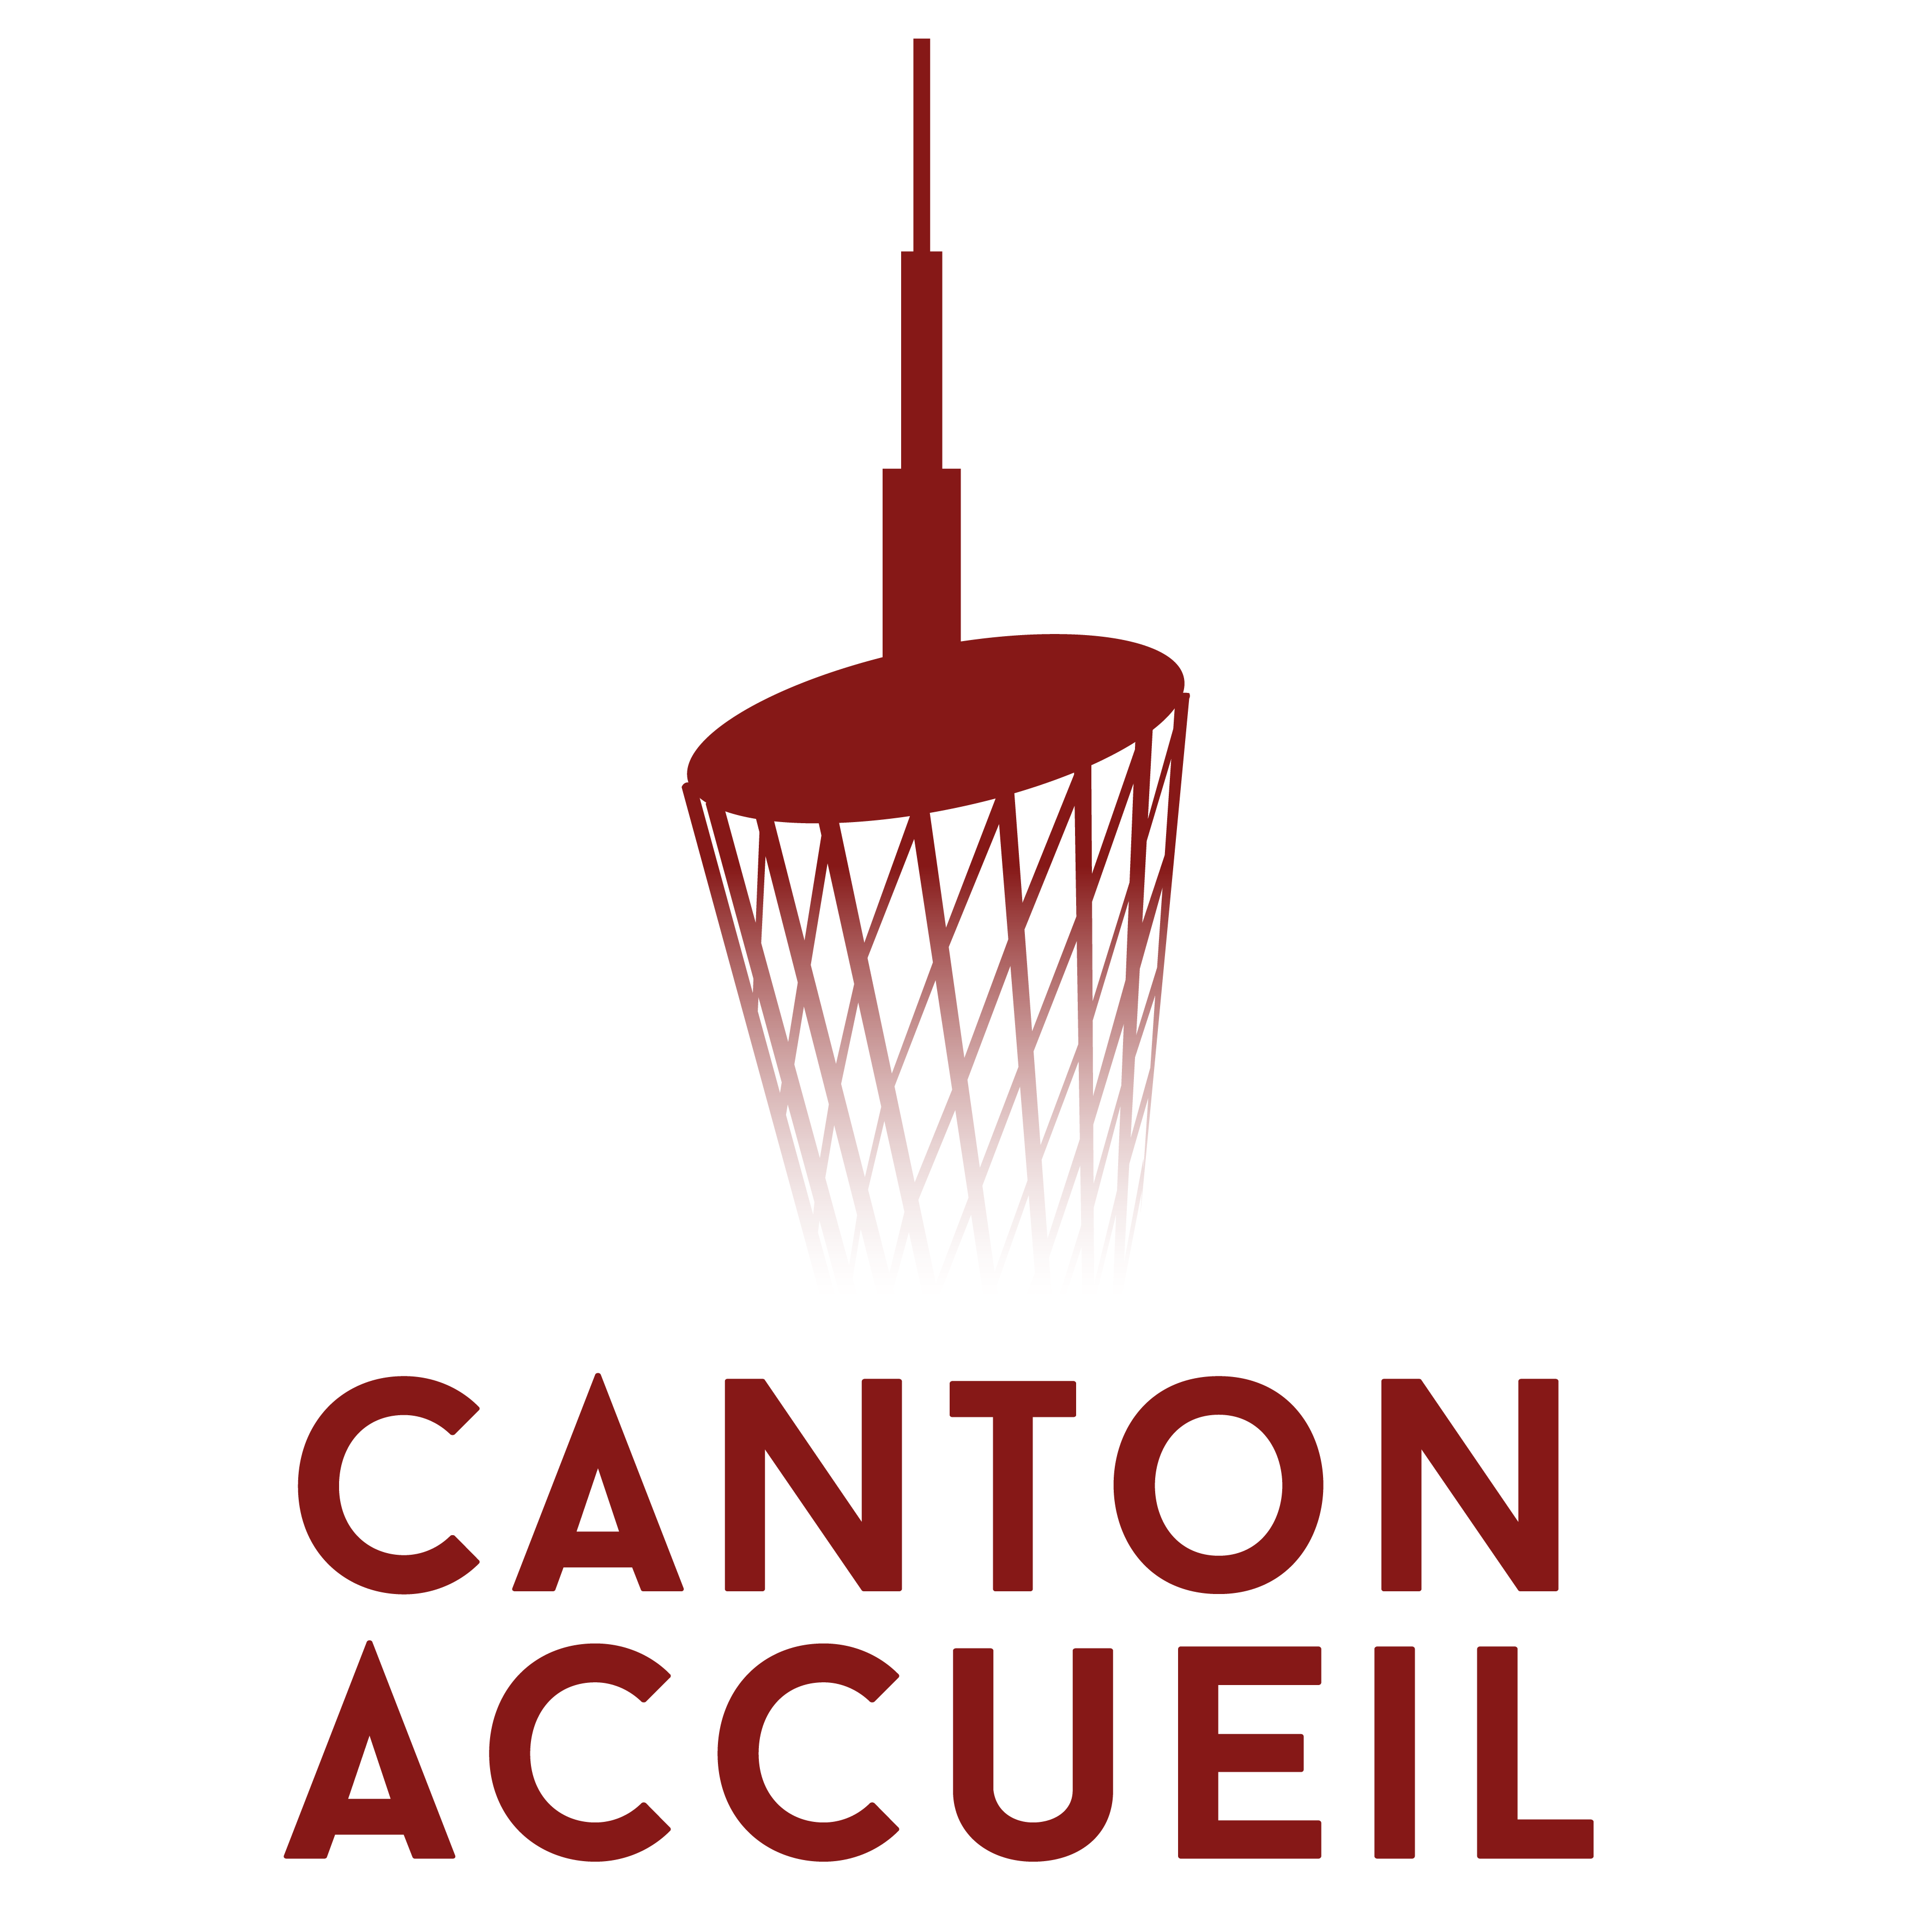 Canton Accueil est une association à but non lucratif qui a pour objectif d'accueillir et d'entretenir les liens entre la communauté francophone à Guangzhou